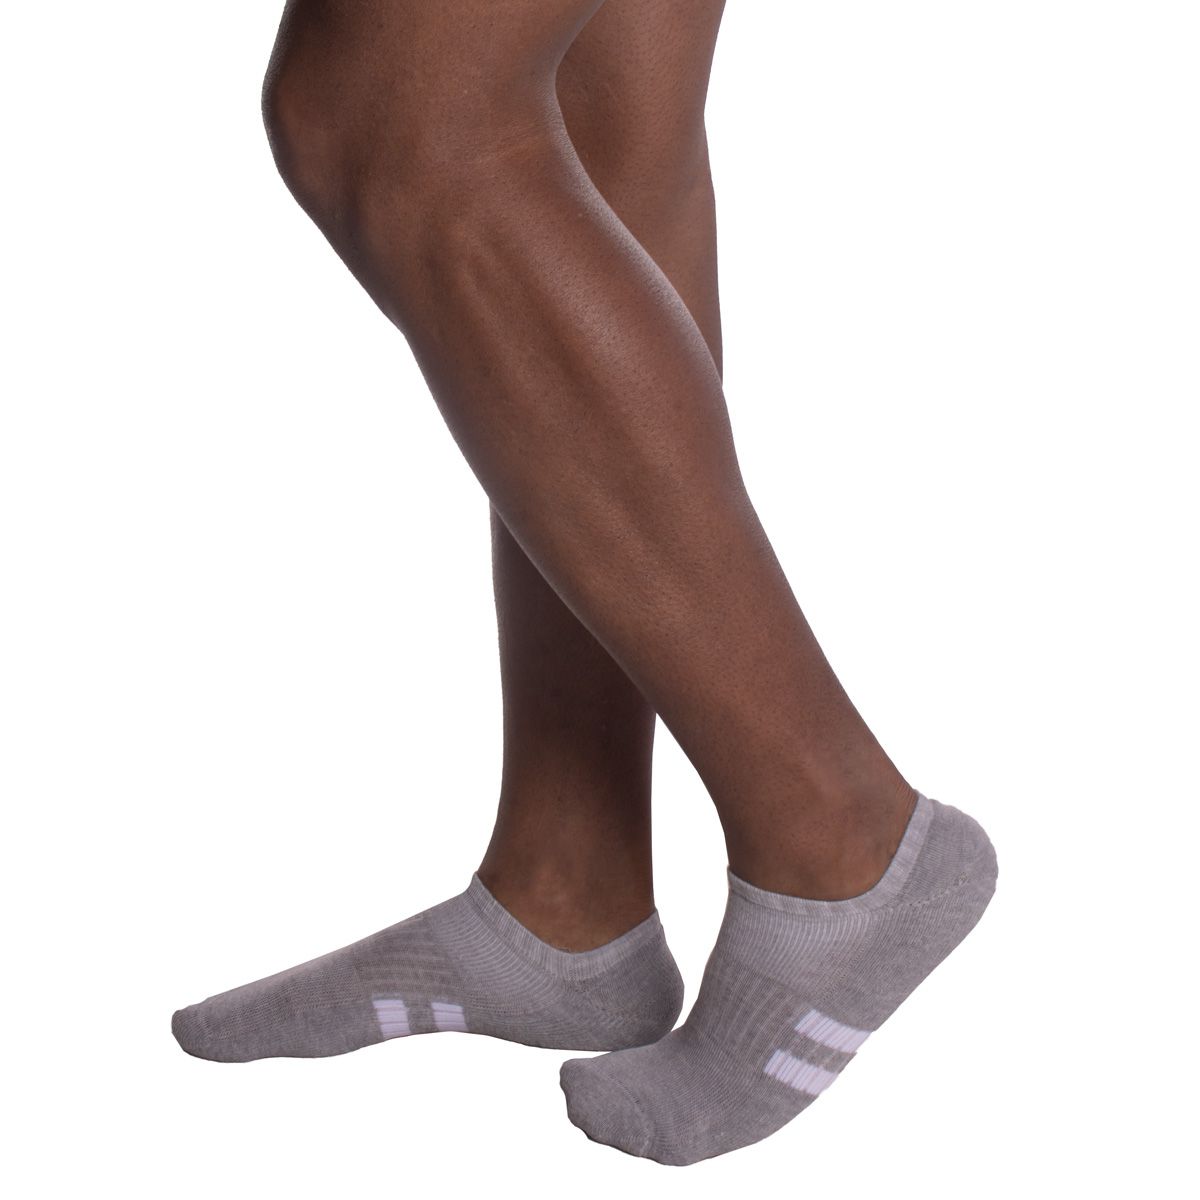 KIT  com 3 Meias sapatilha esportiva masculina Selene